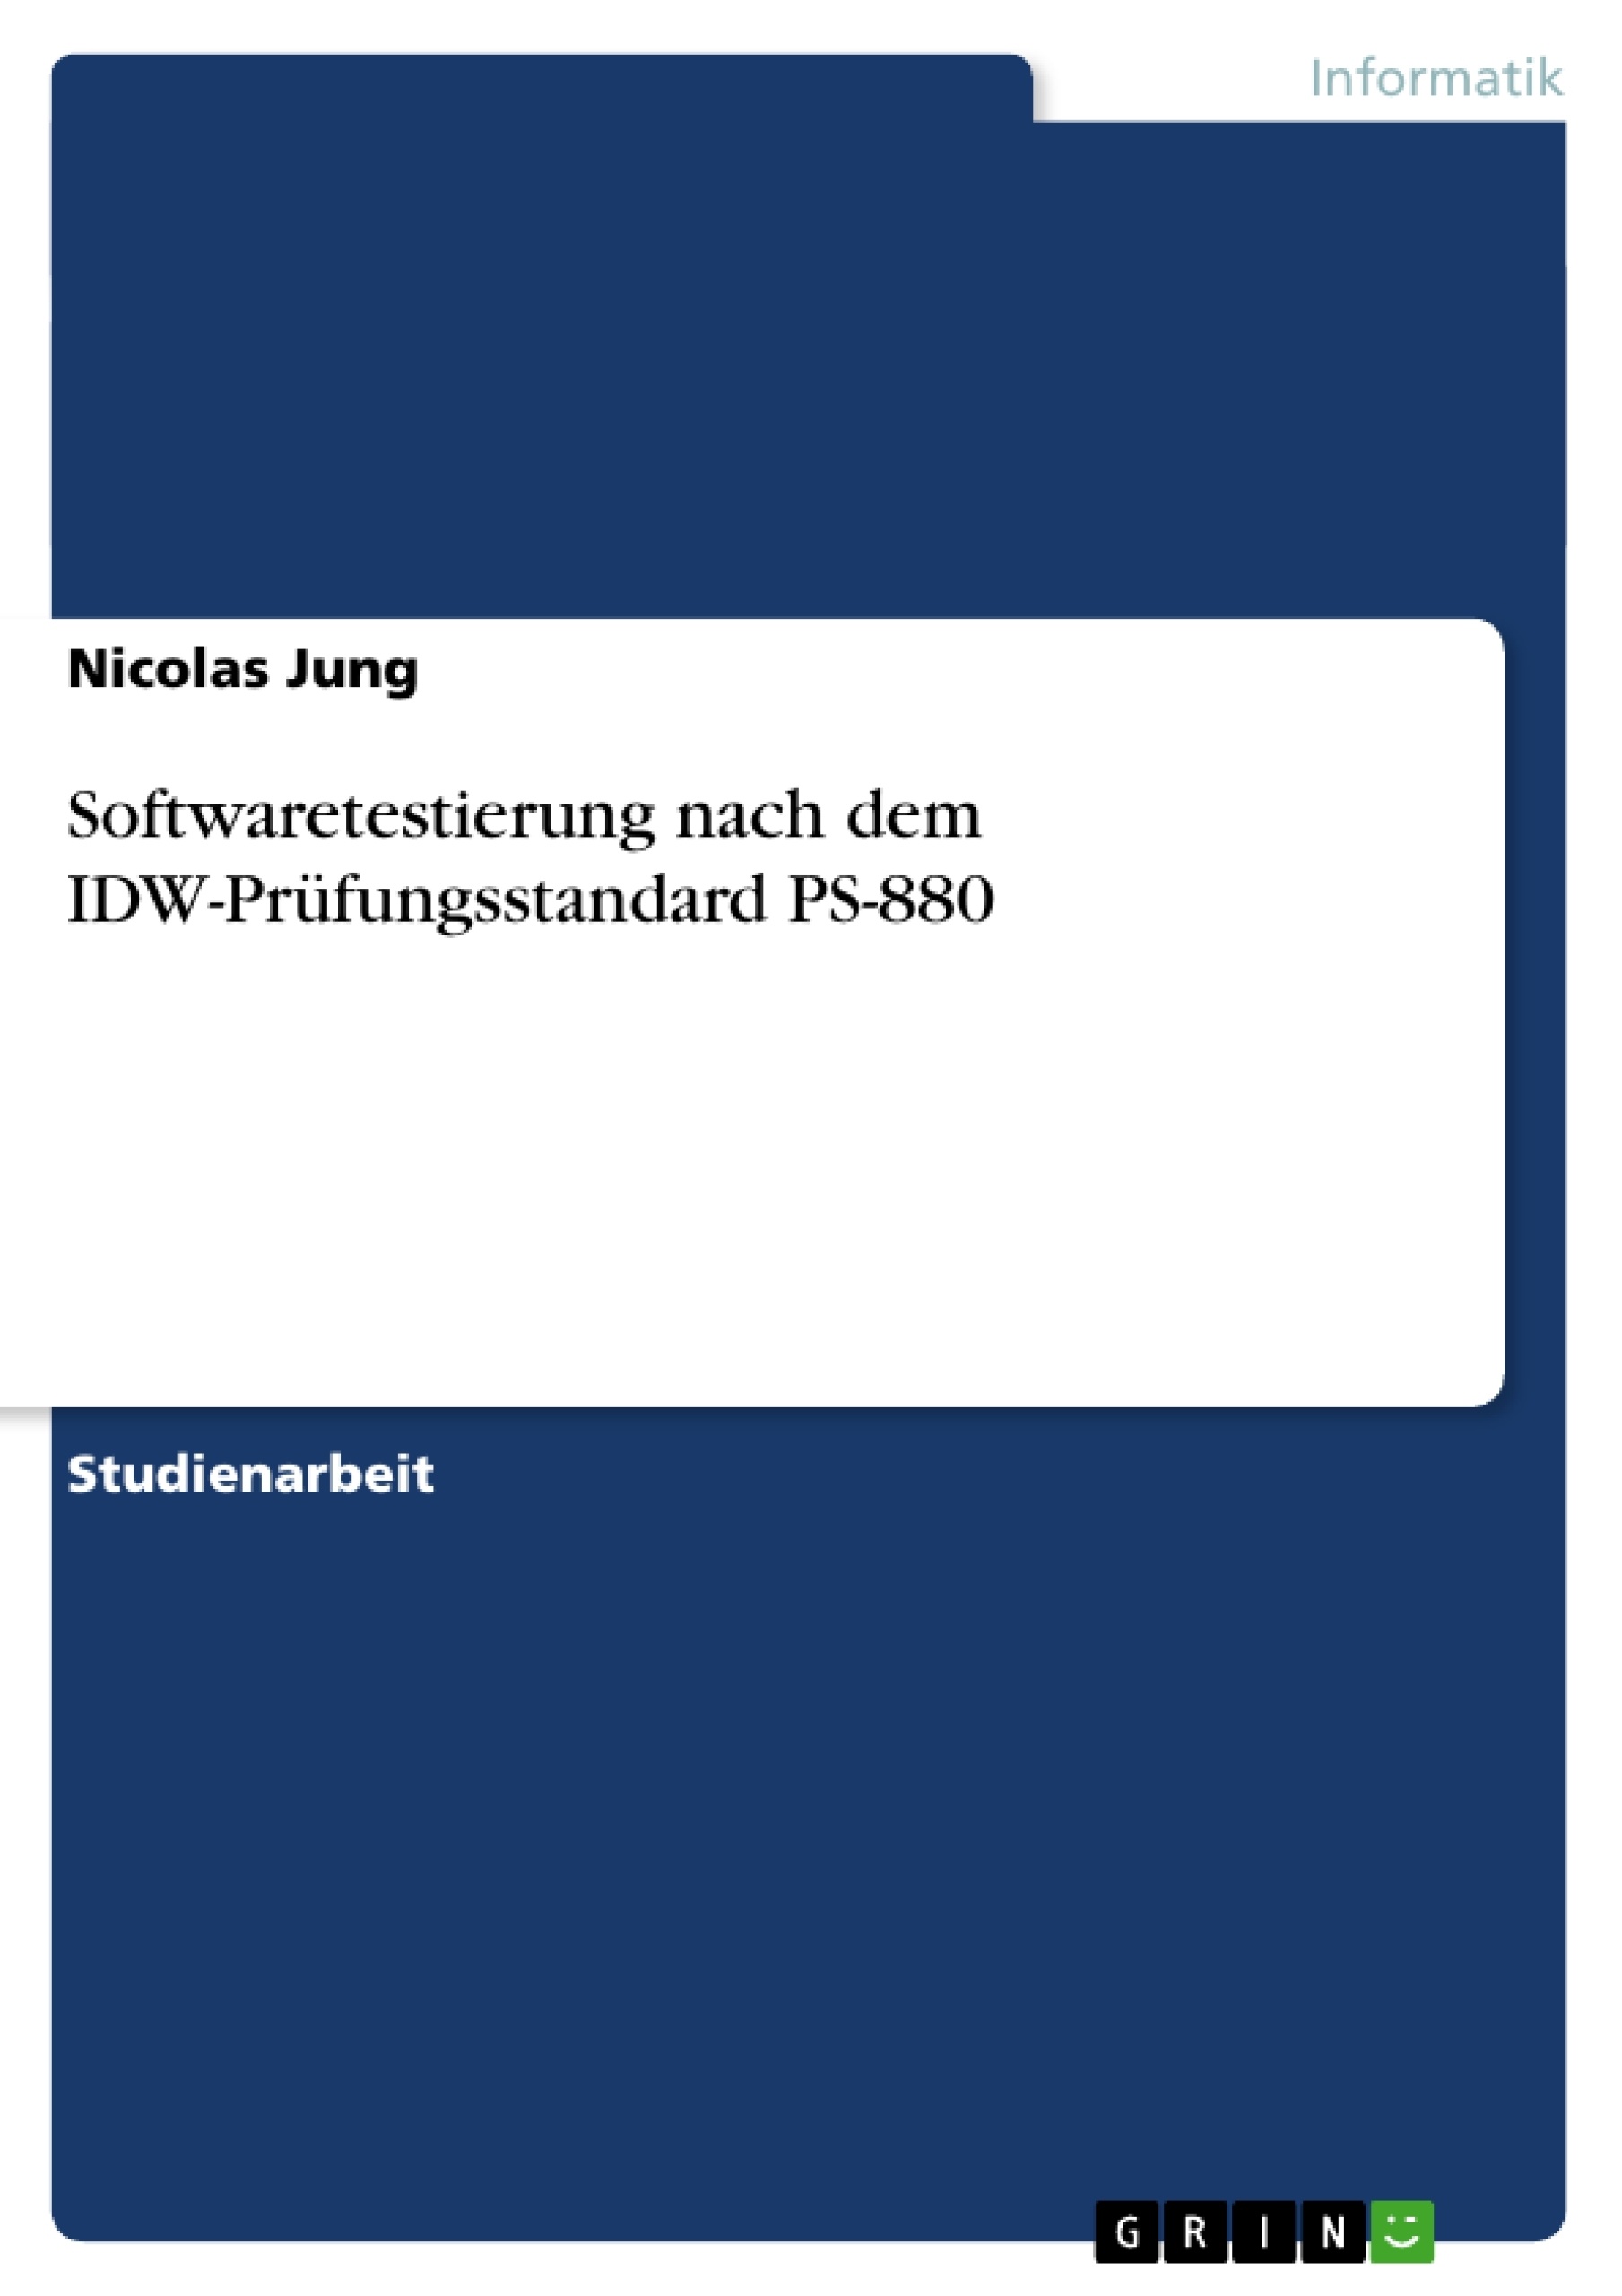 Title: Softwaretestierung nach dem IDW-Prüfungsstandard PS-880